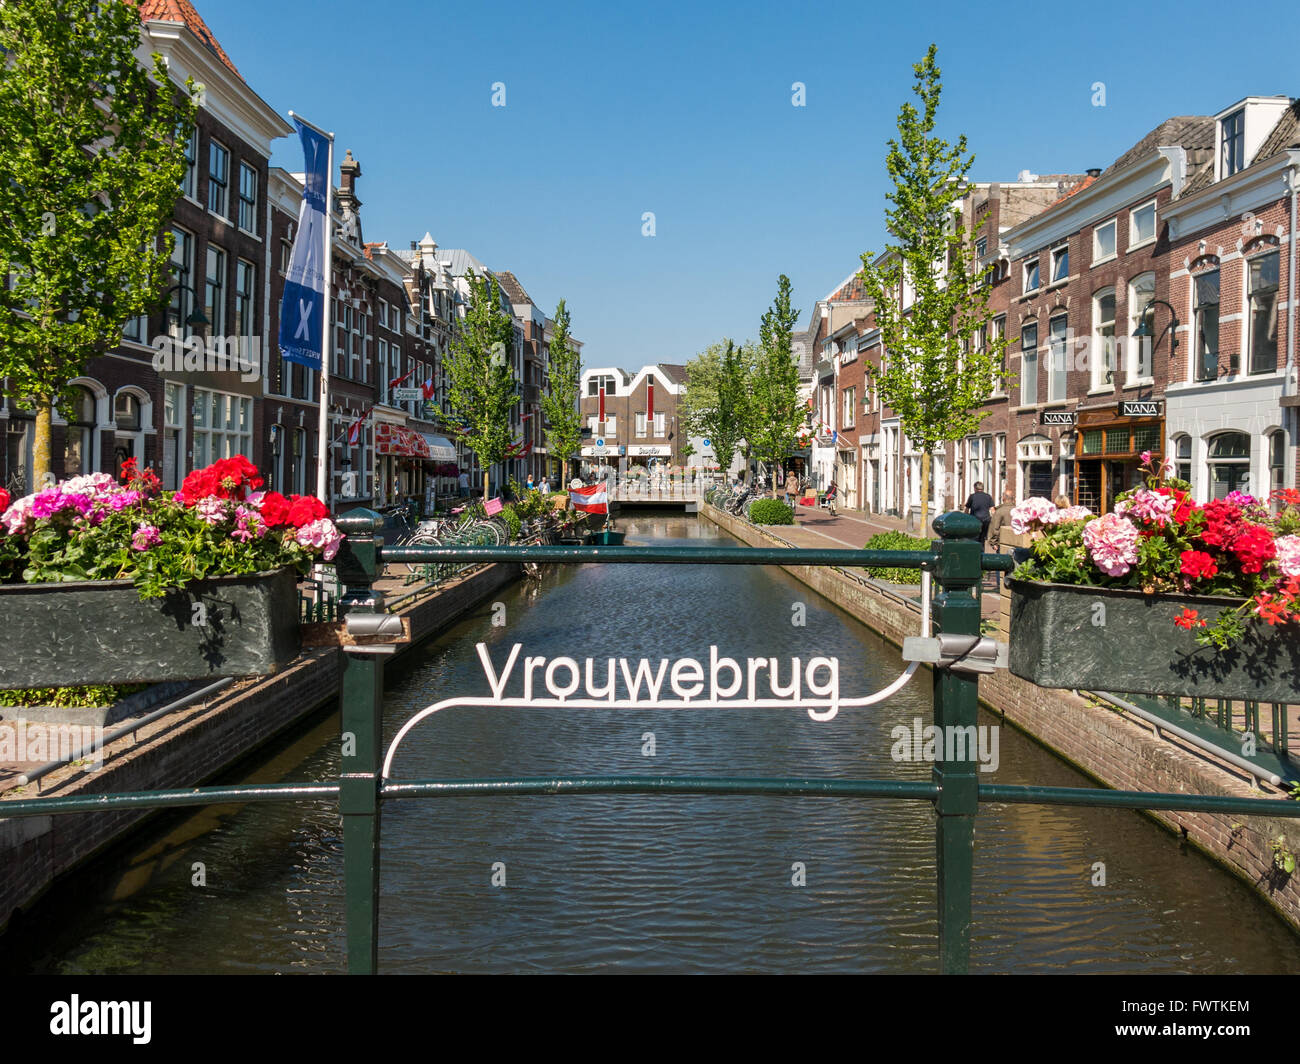 Vrouwebrug bridge over Turfmarkt canal in the city of Gouda, Netherlands Stock Photo